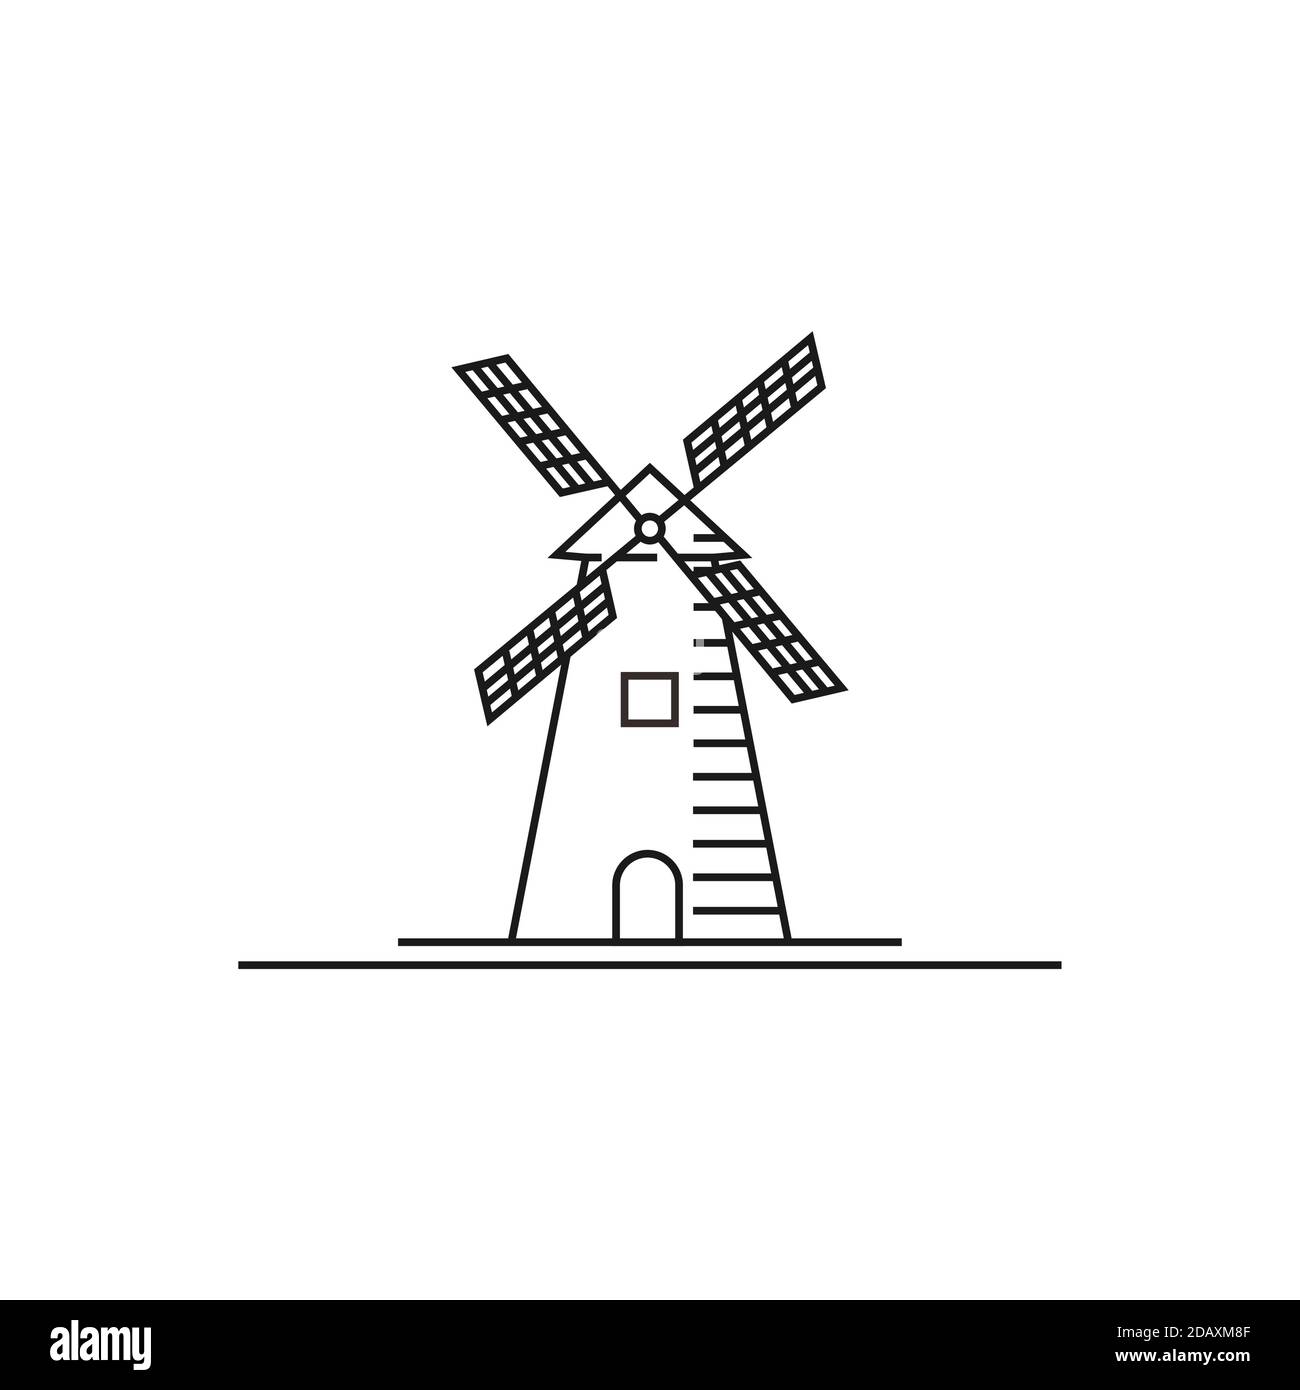 Minimalistische Linie Art Creek und Windmill Farm Logo Design Stock Vektor